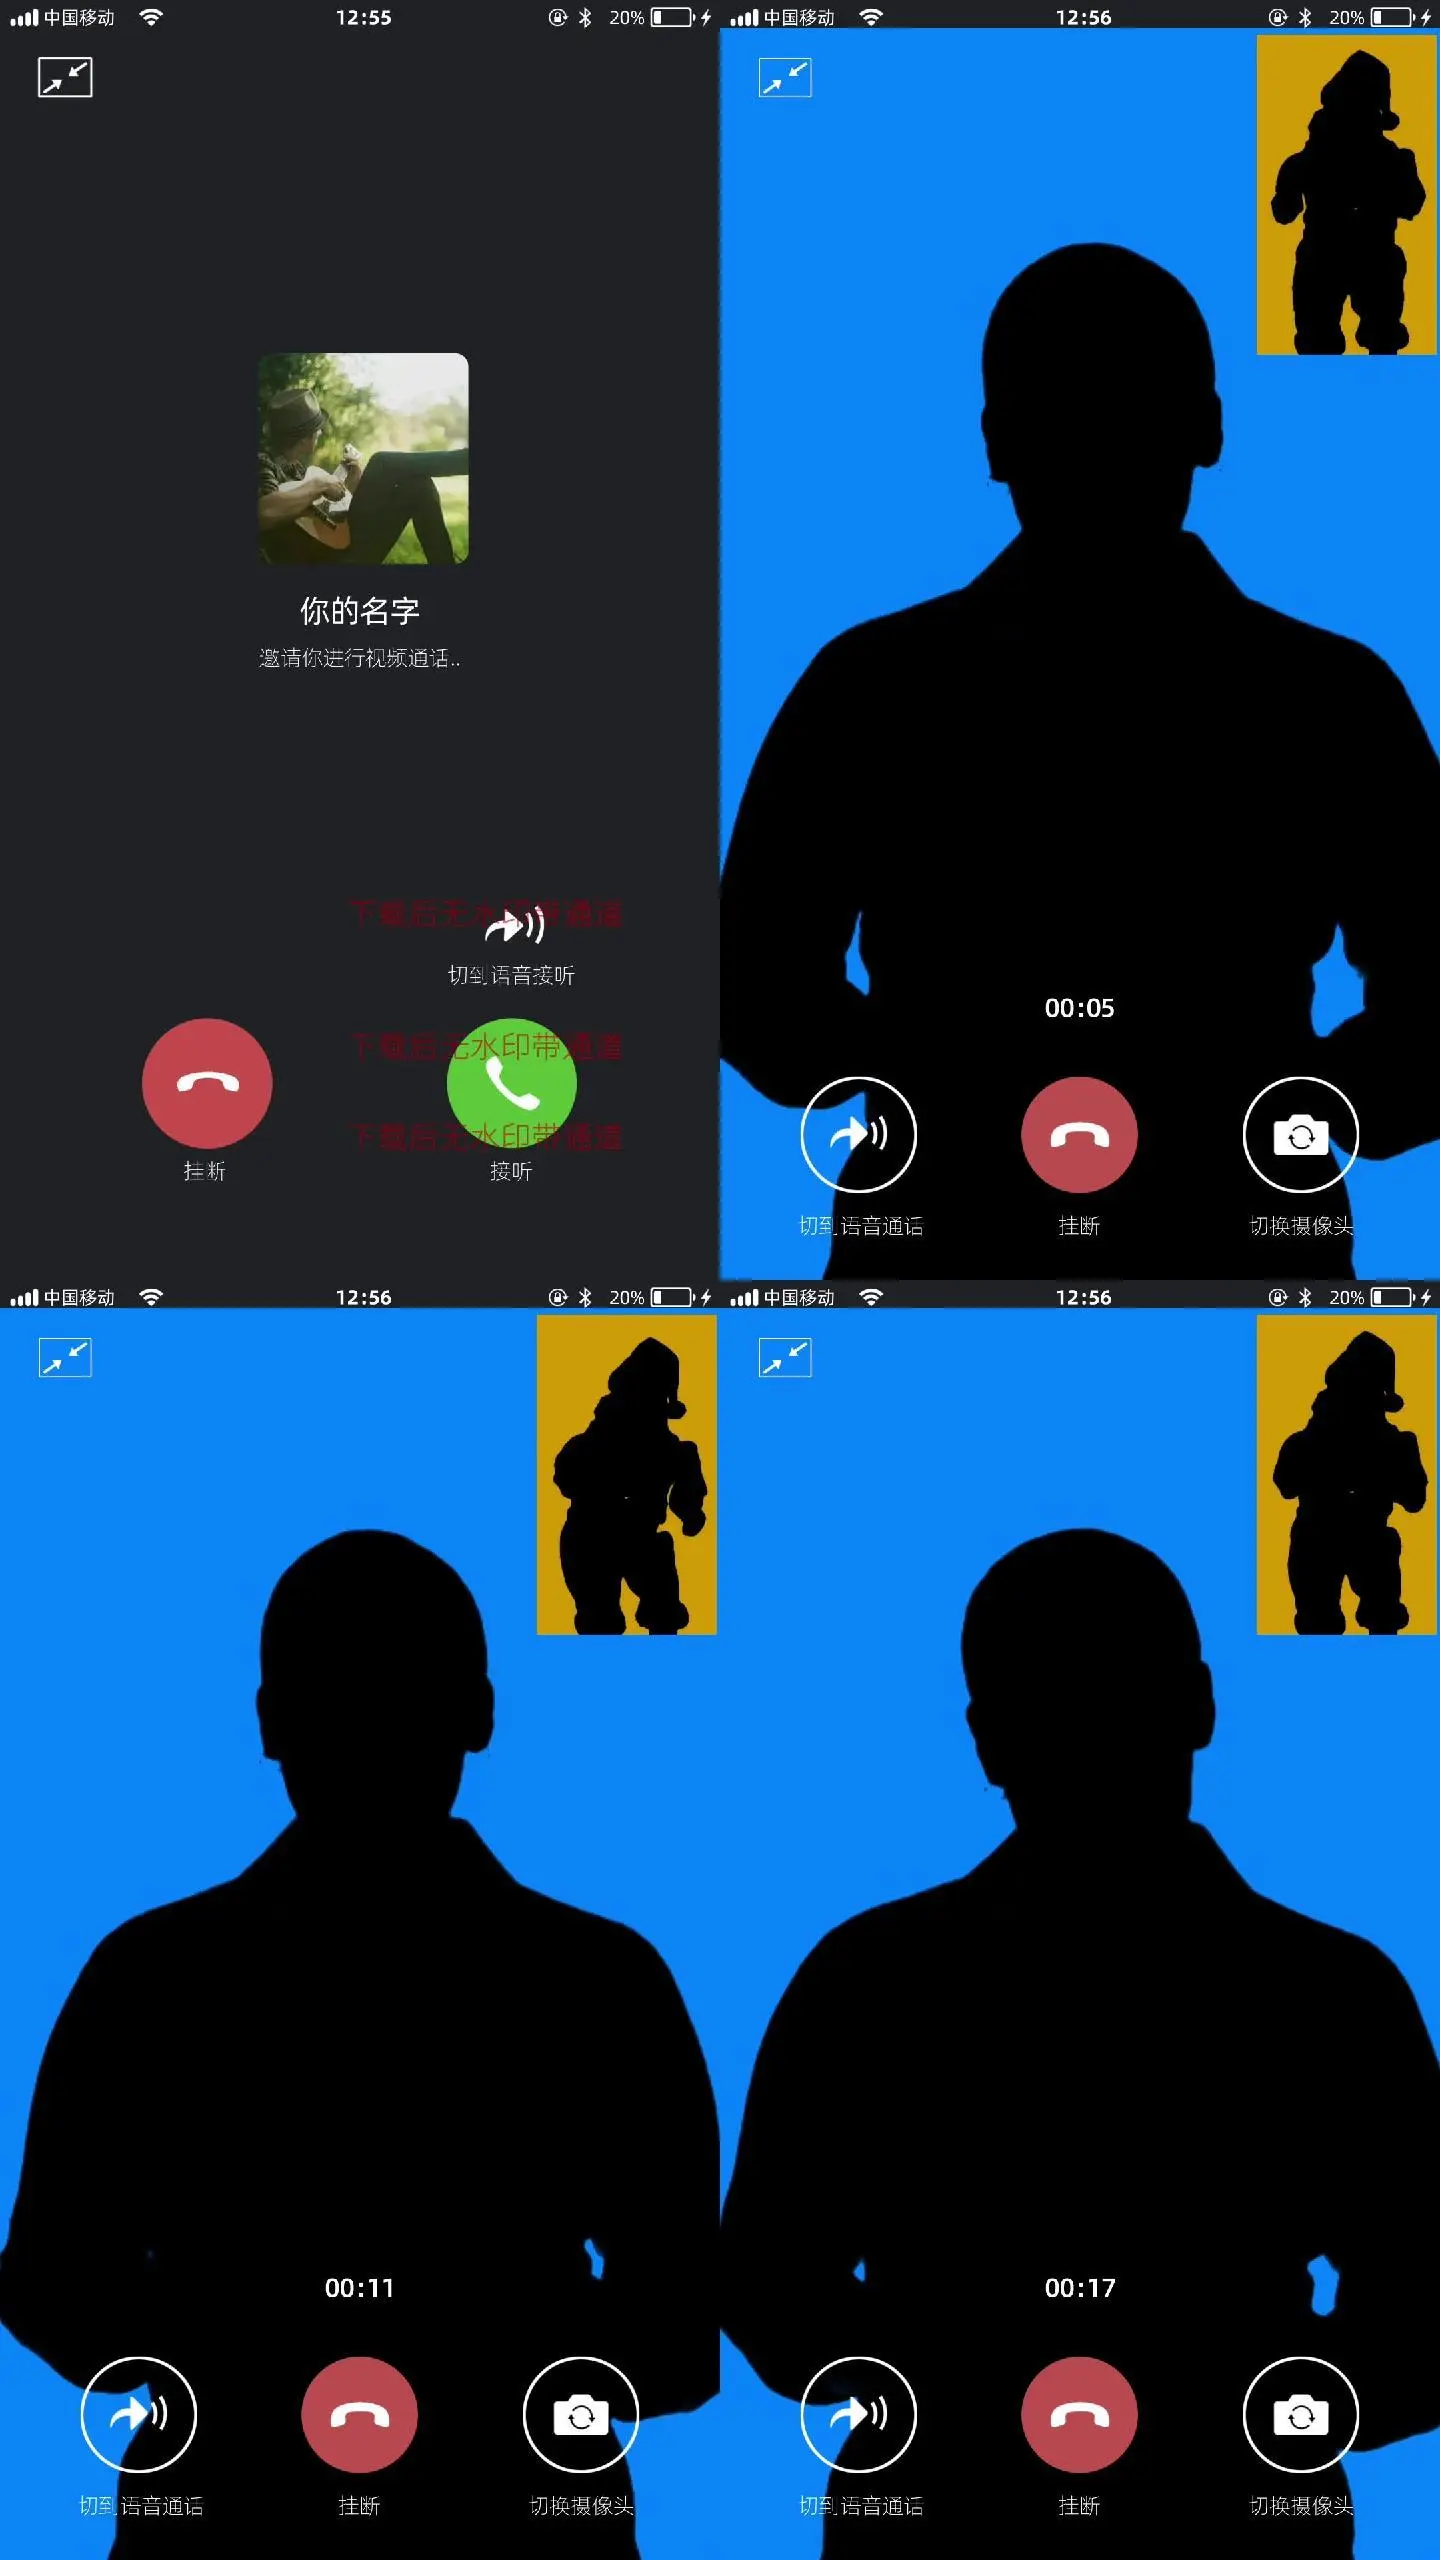 whatsapp怎么下载手机_下载手机万能遥控器_下载手机管家